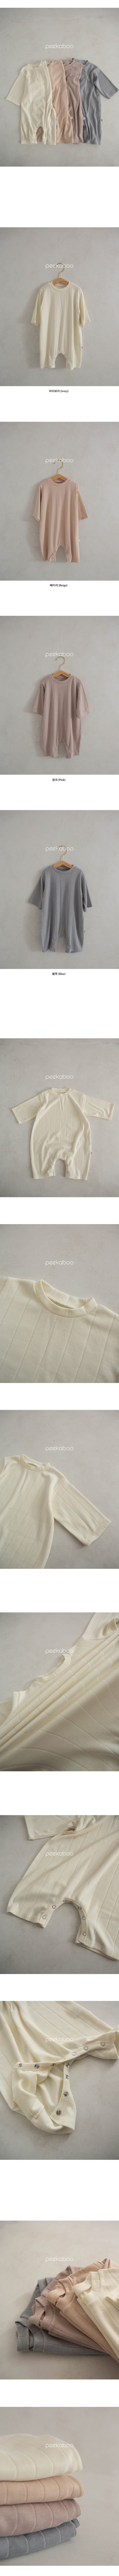 Peekaboo - Korean Baby Fashion - #onlinebabyshop - Smooth Bodysuit - 4